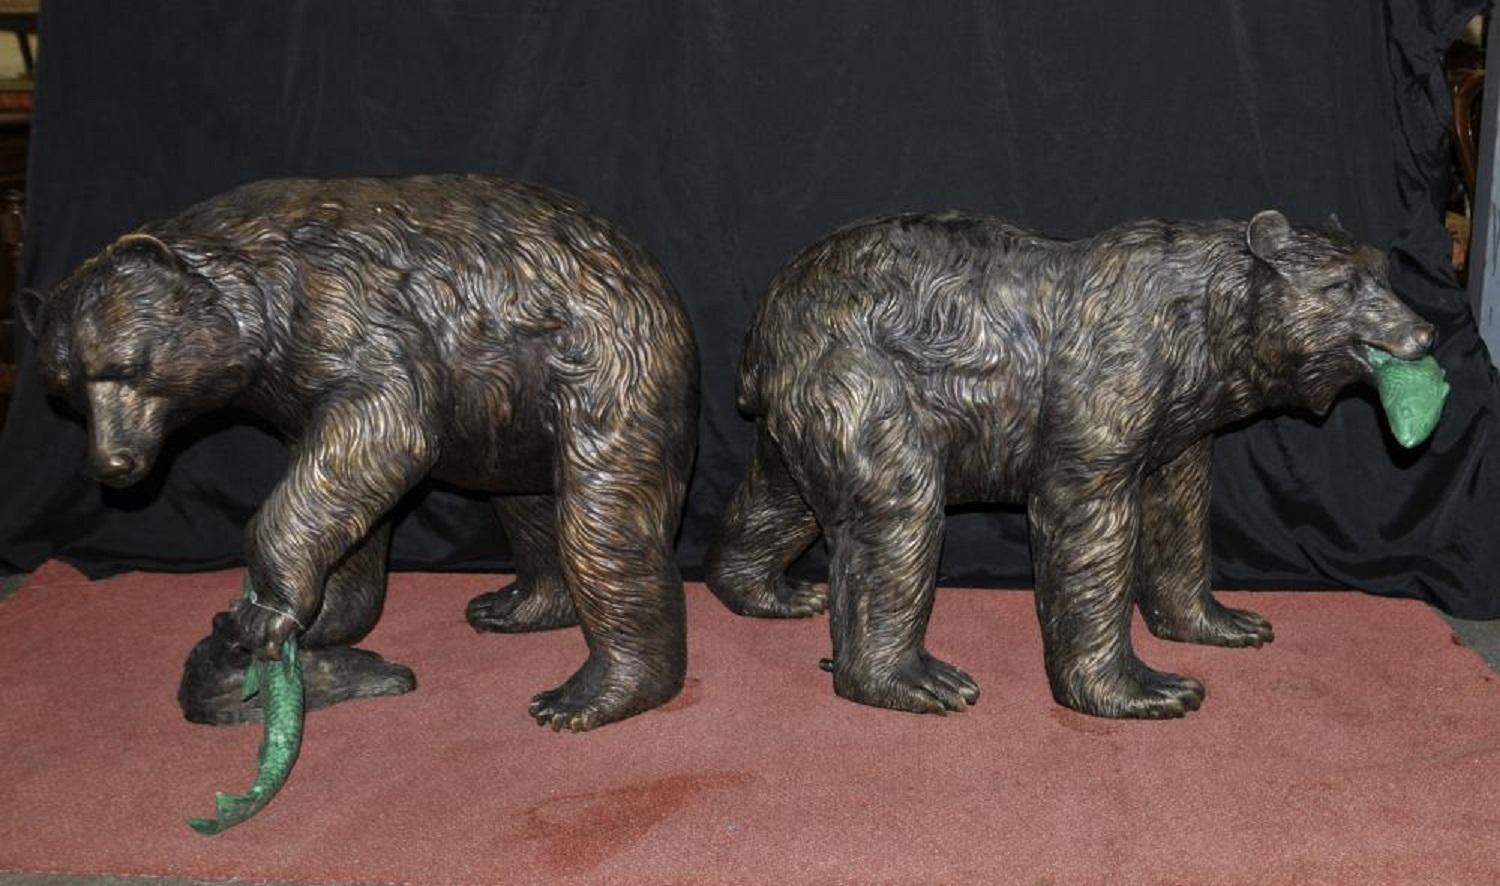 - Superbe paire de fontaines en bronze en forme d'ours américain
- Chaque ours est représenté en train d'attraper le saumon
- Paire de fontaines de caractère, nous avons... Superbe paire de fontaines en bronze en forme d'ours américain.
- Chaque